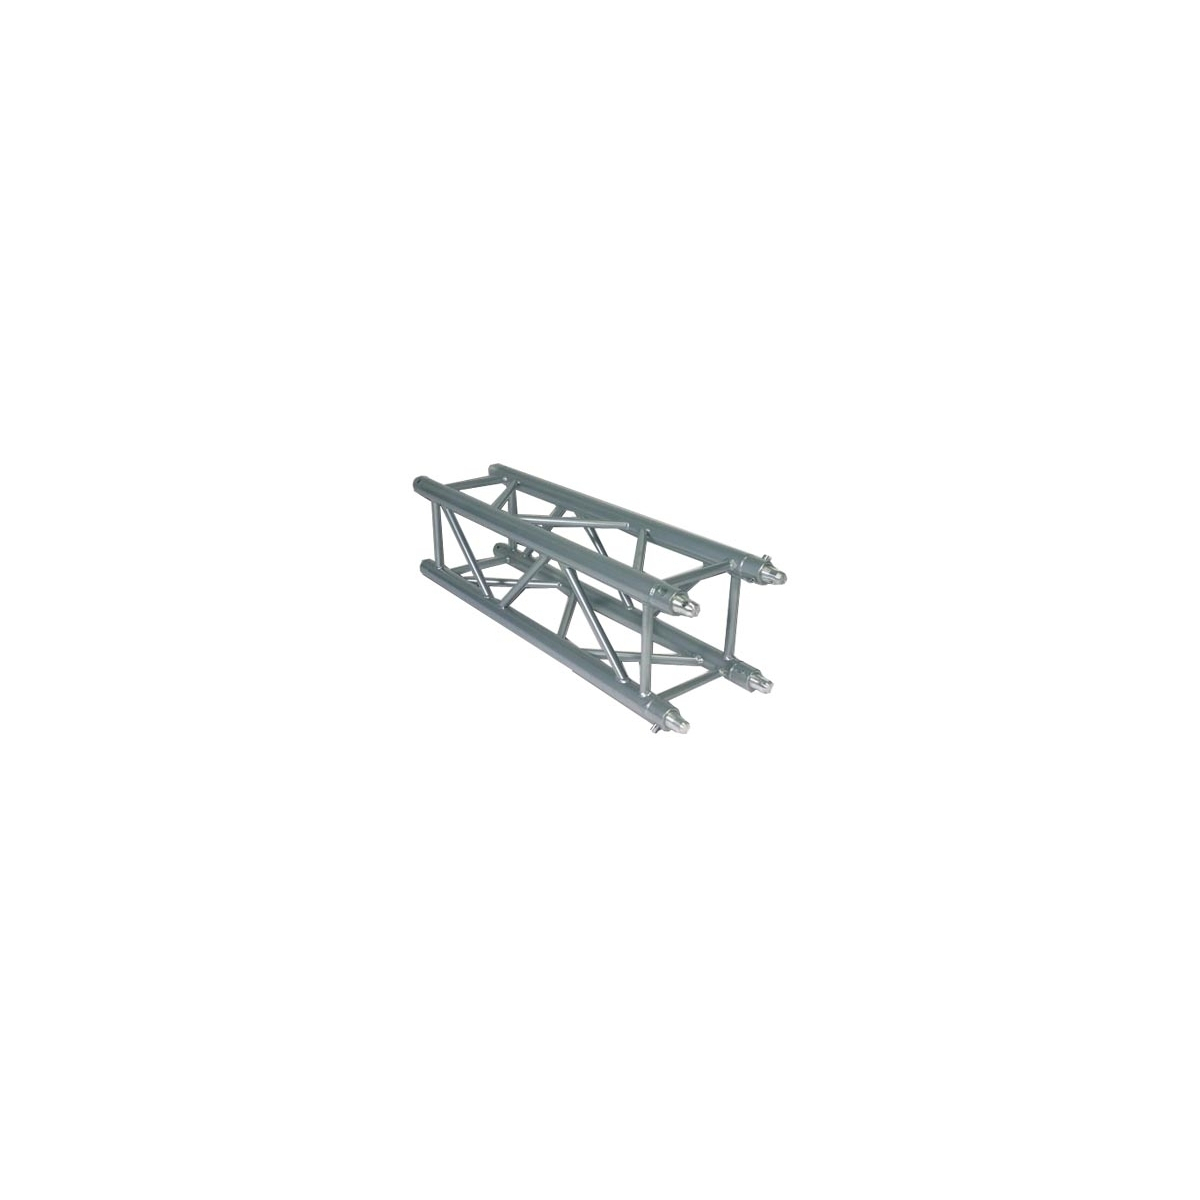 Structures aluminium - Mobiltruss - QUATRO 40115